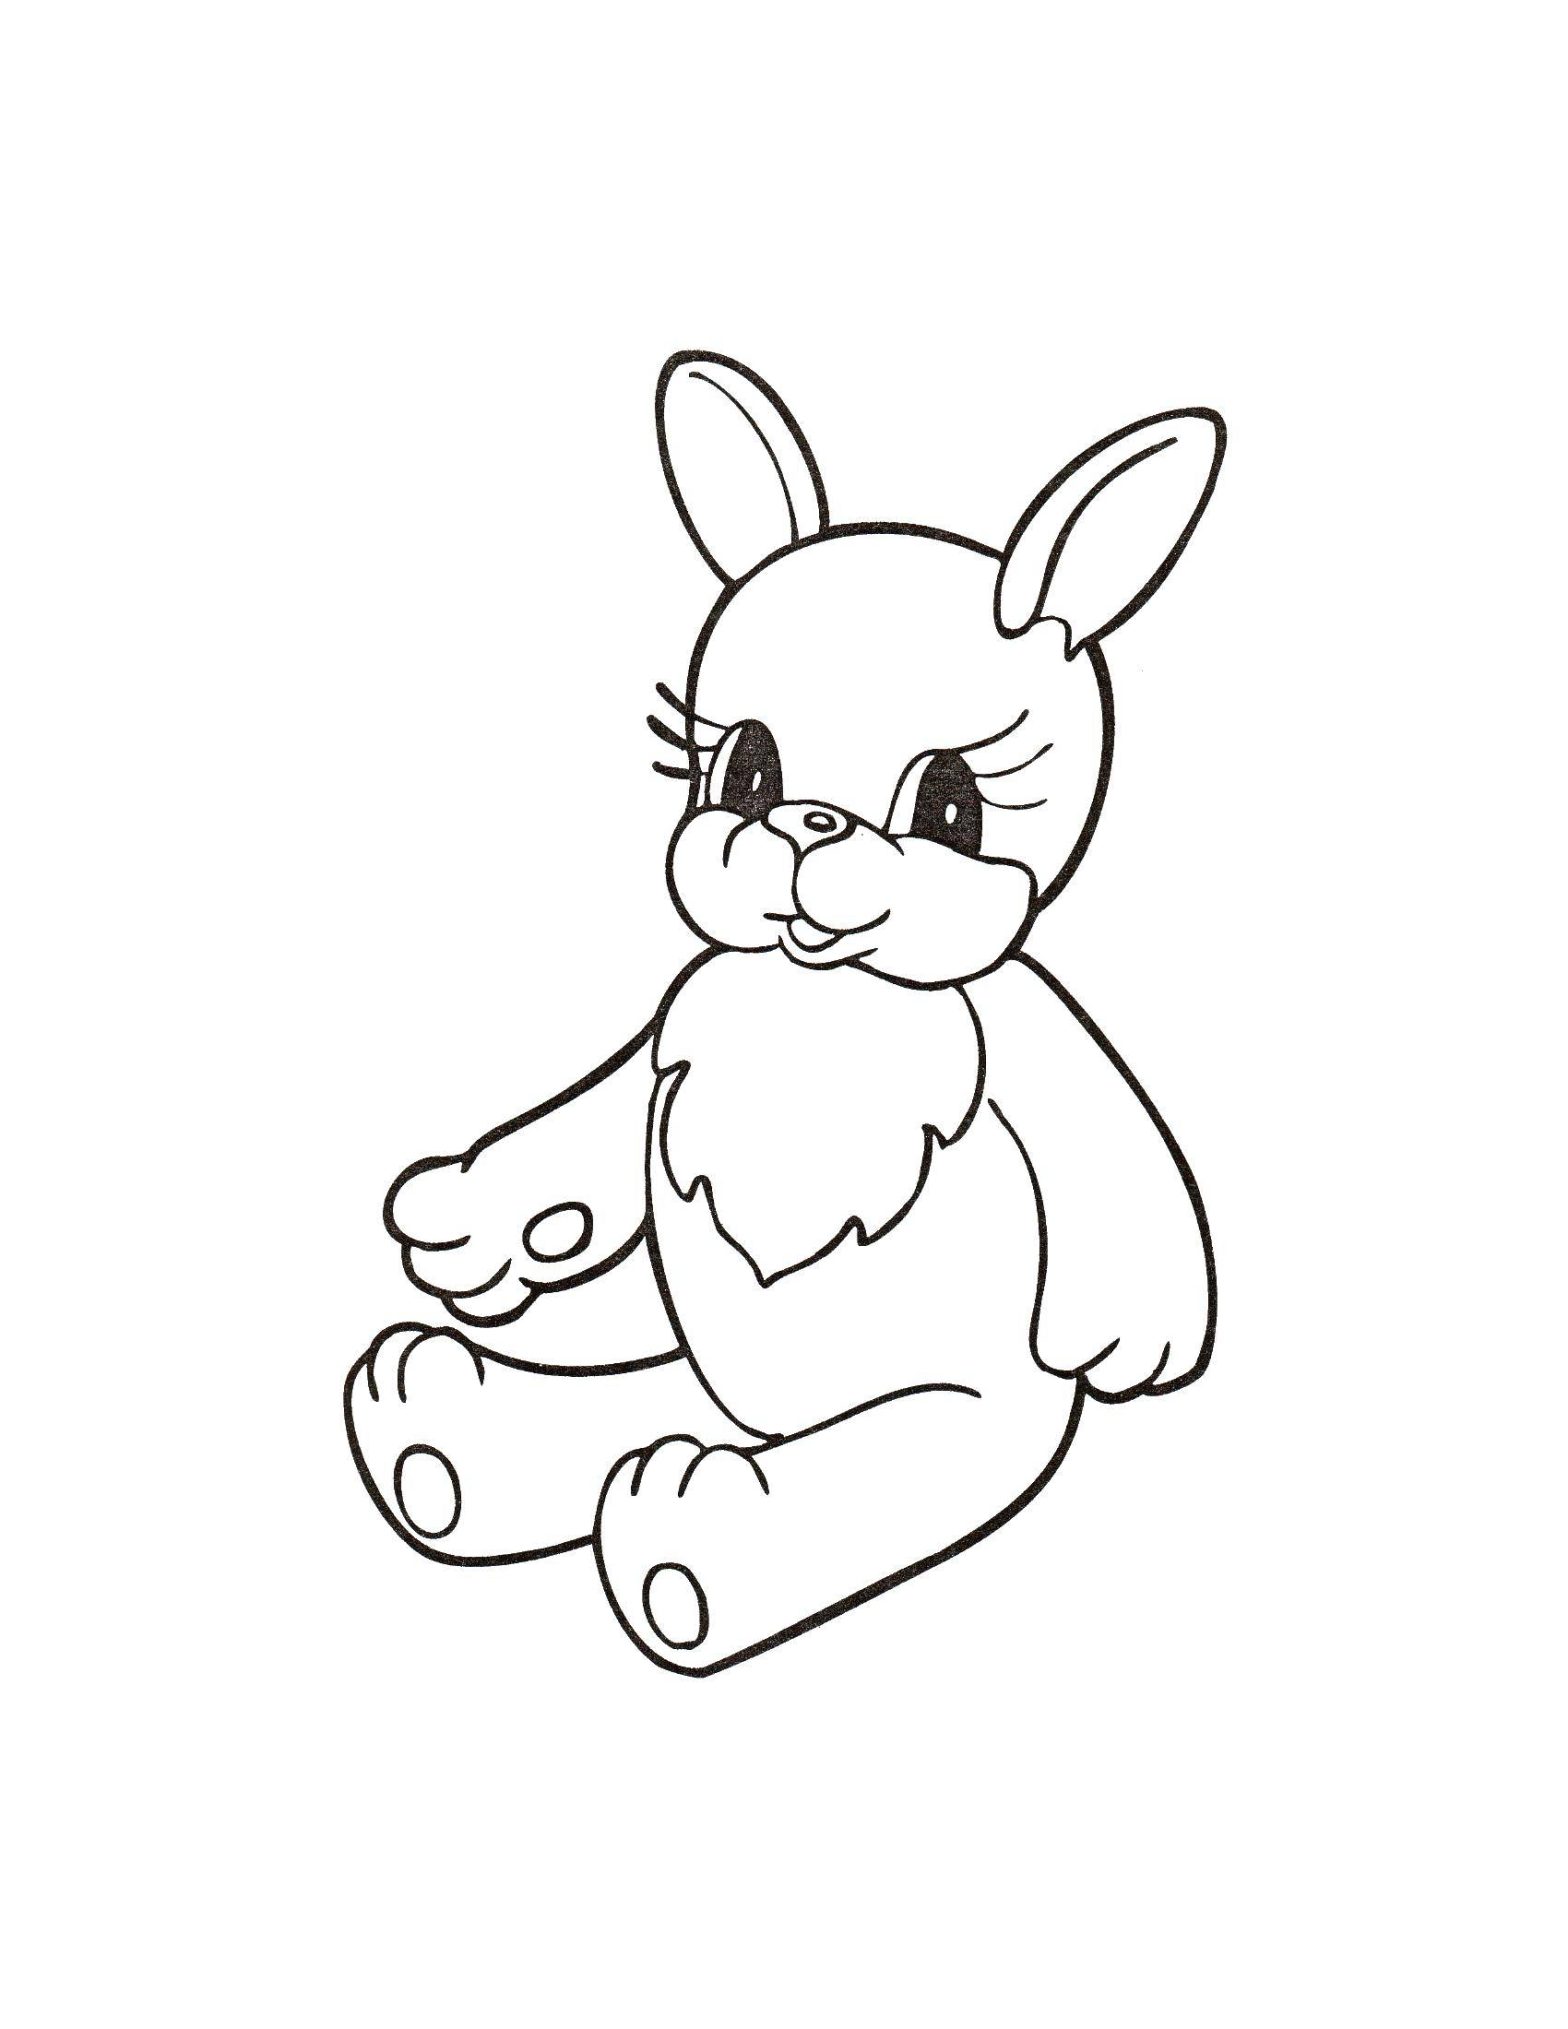 Раскраска с изображением игрушек зайца и кролика (игрушки, заяц, кролик, увлекательные, картинки)